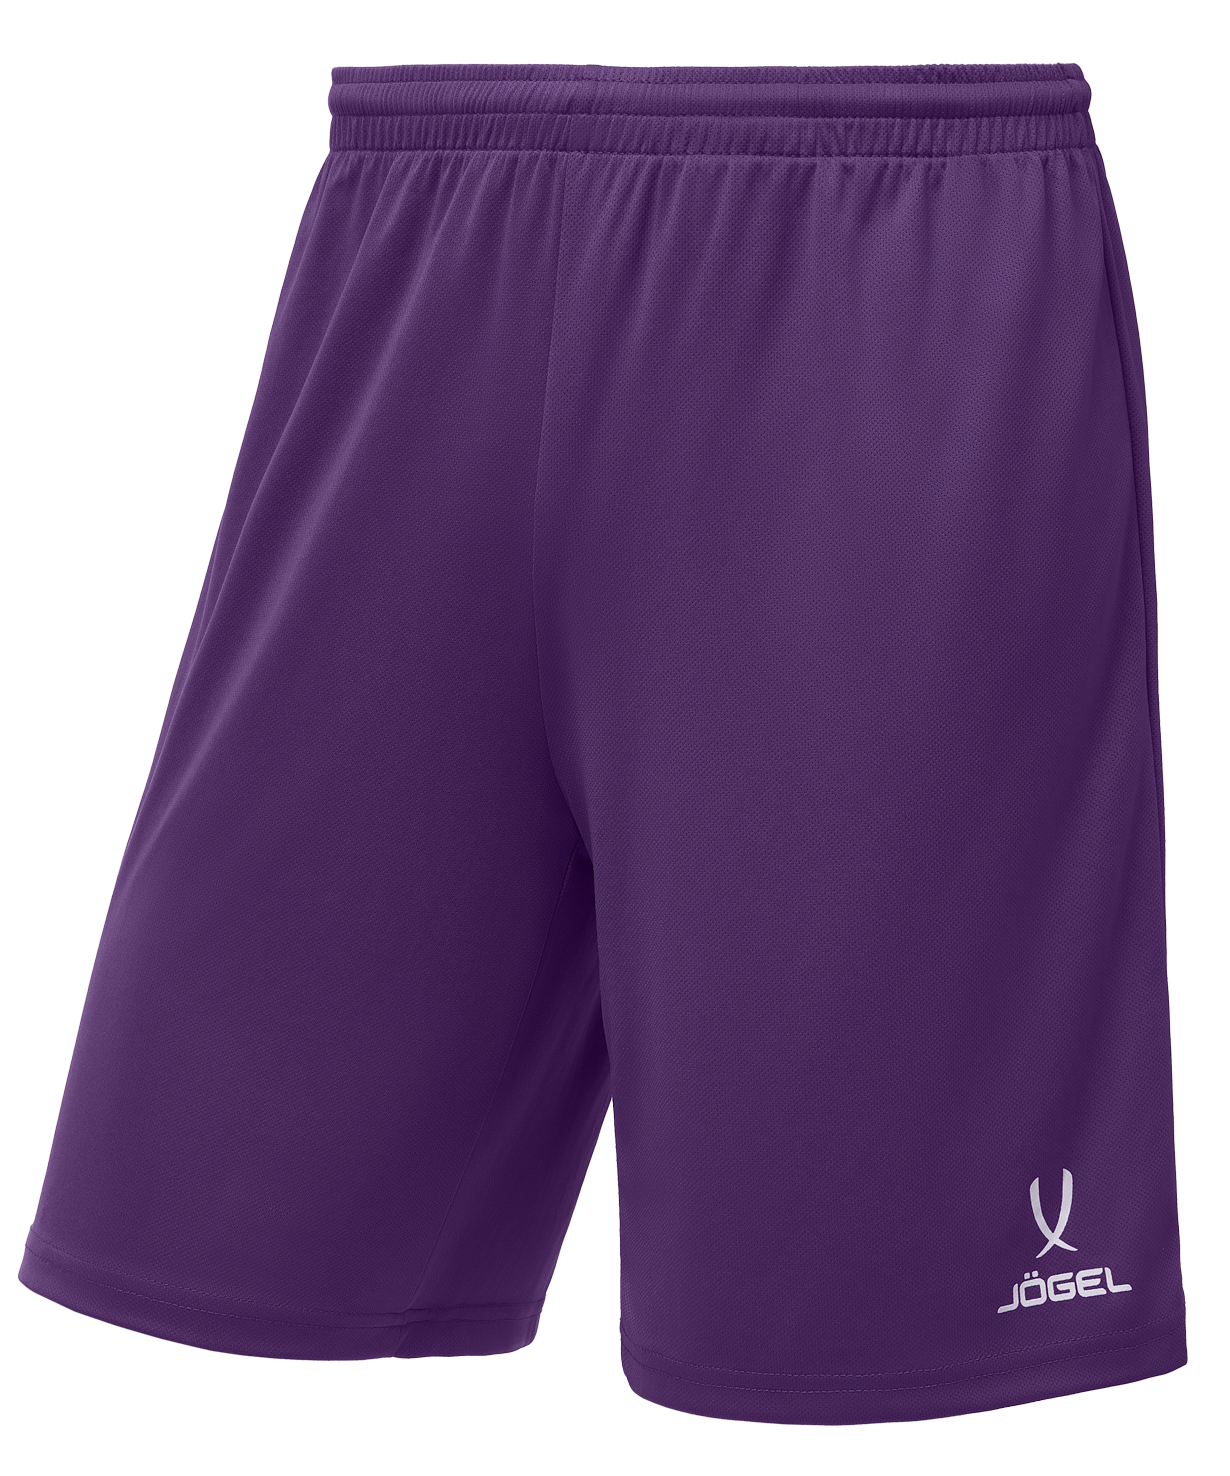 Шорты баскетбольные Jogel Camp Basic, фиолетовый, детский - YS шорты футбольные детские jogel camp jfs 1120 v1 k фиолетовый белый р 134